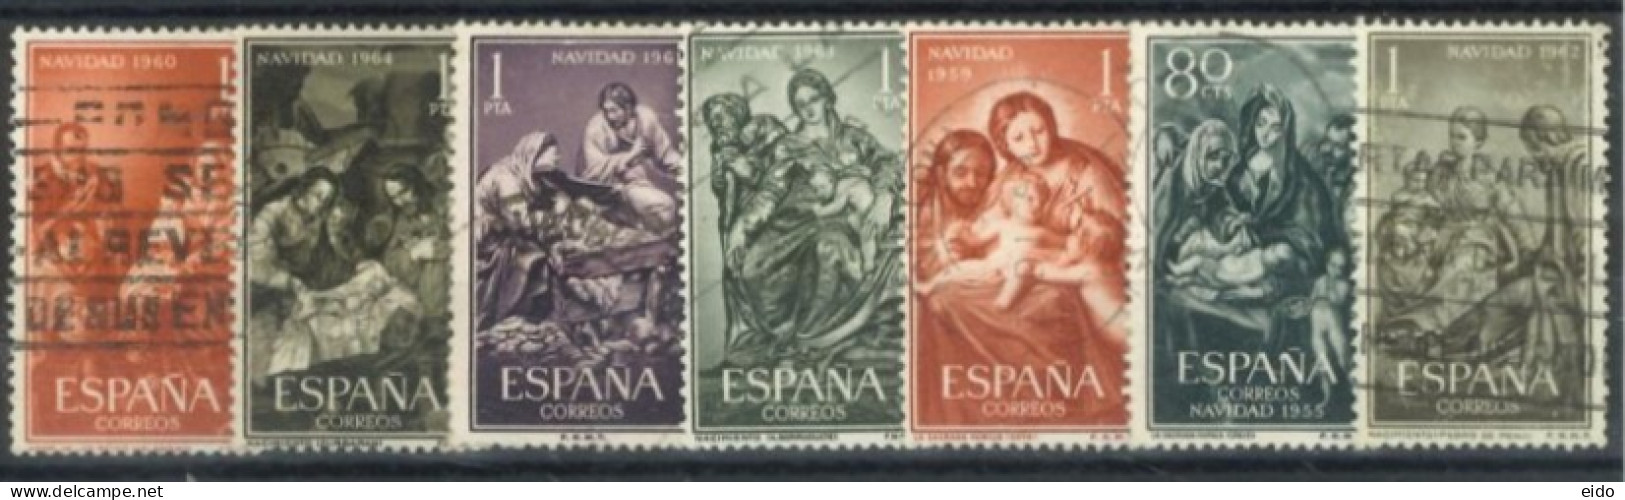 SPAIN, 1955/63, VIRGINS STAMPS SET OF 7, USED. - Usados